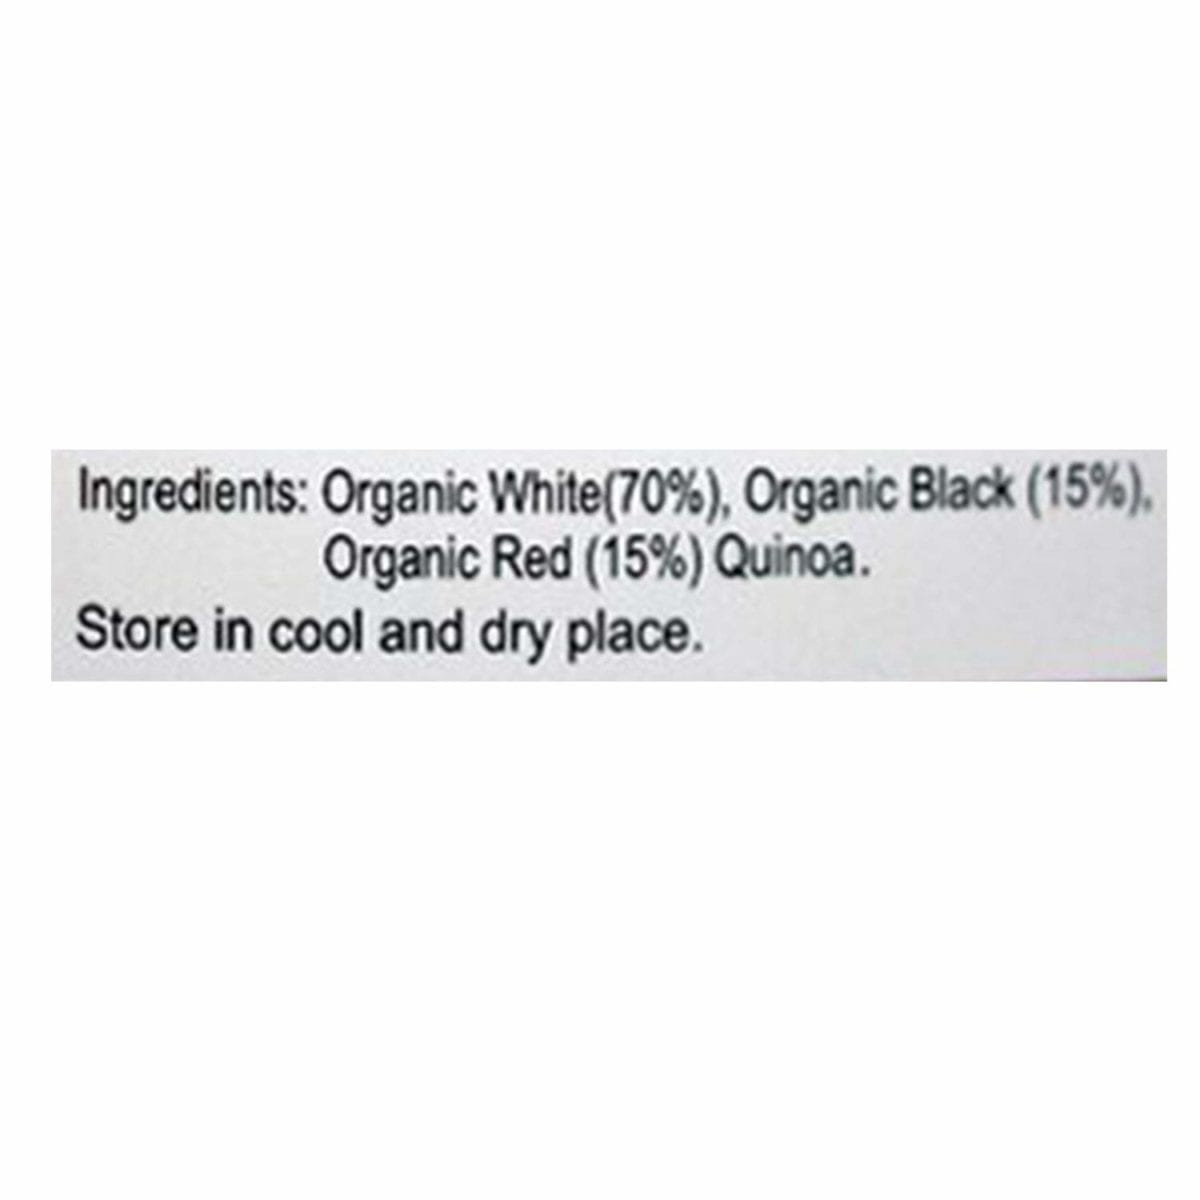 chenab-organic-tricolor-quinoa-500g